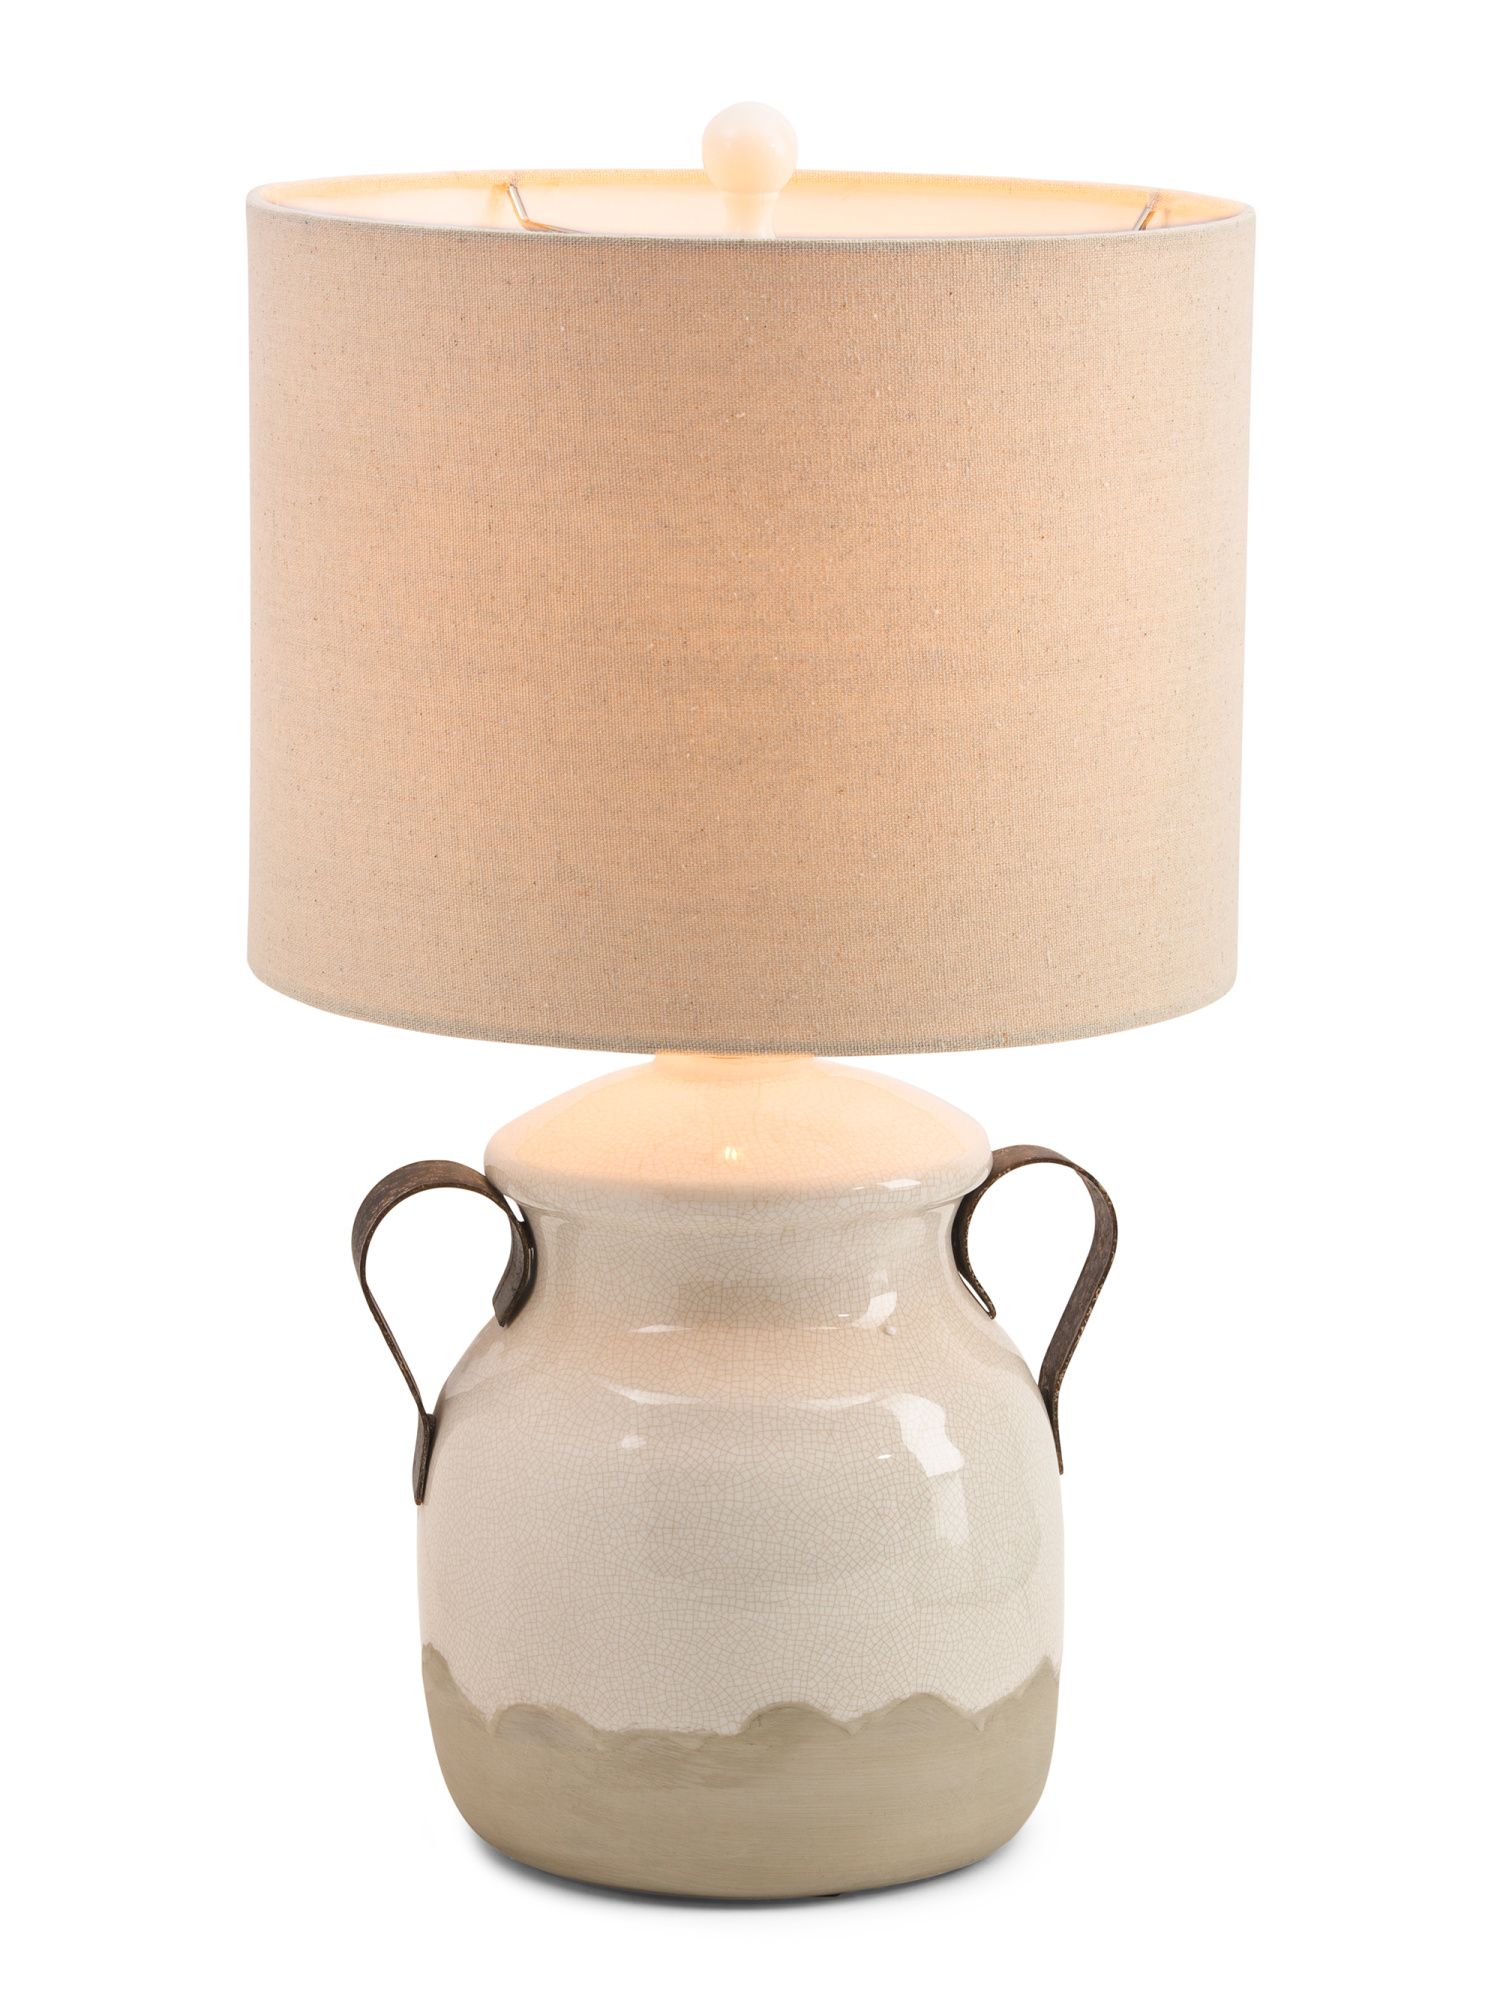 24in Ceramic Table Lamp | TJ Maxx